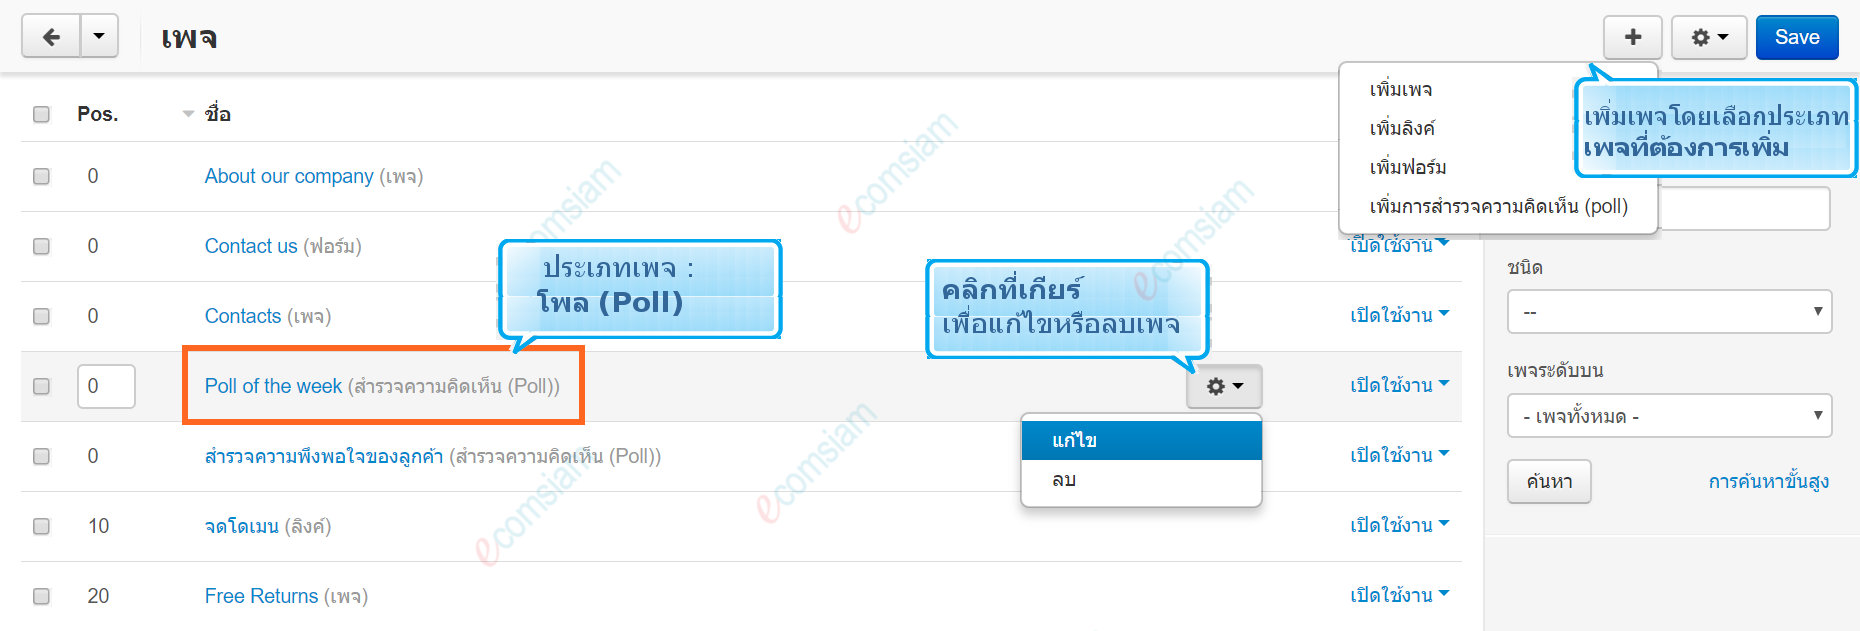 เว็บไซต์สำเร็จรูปไทย - คู่มือร้านออนไลน์ - การจัดการร้านออนไลน์ -เว็บเพจ pages โพล poll